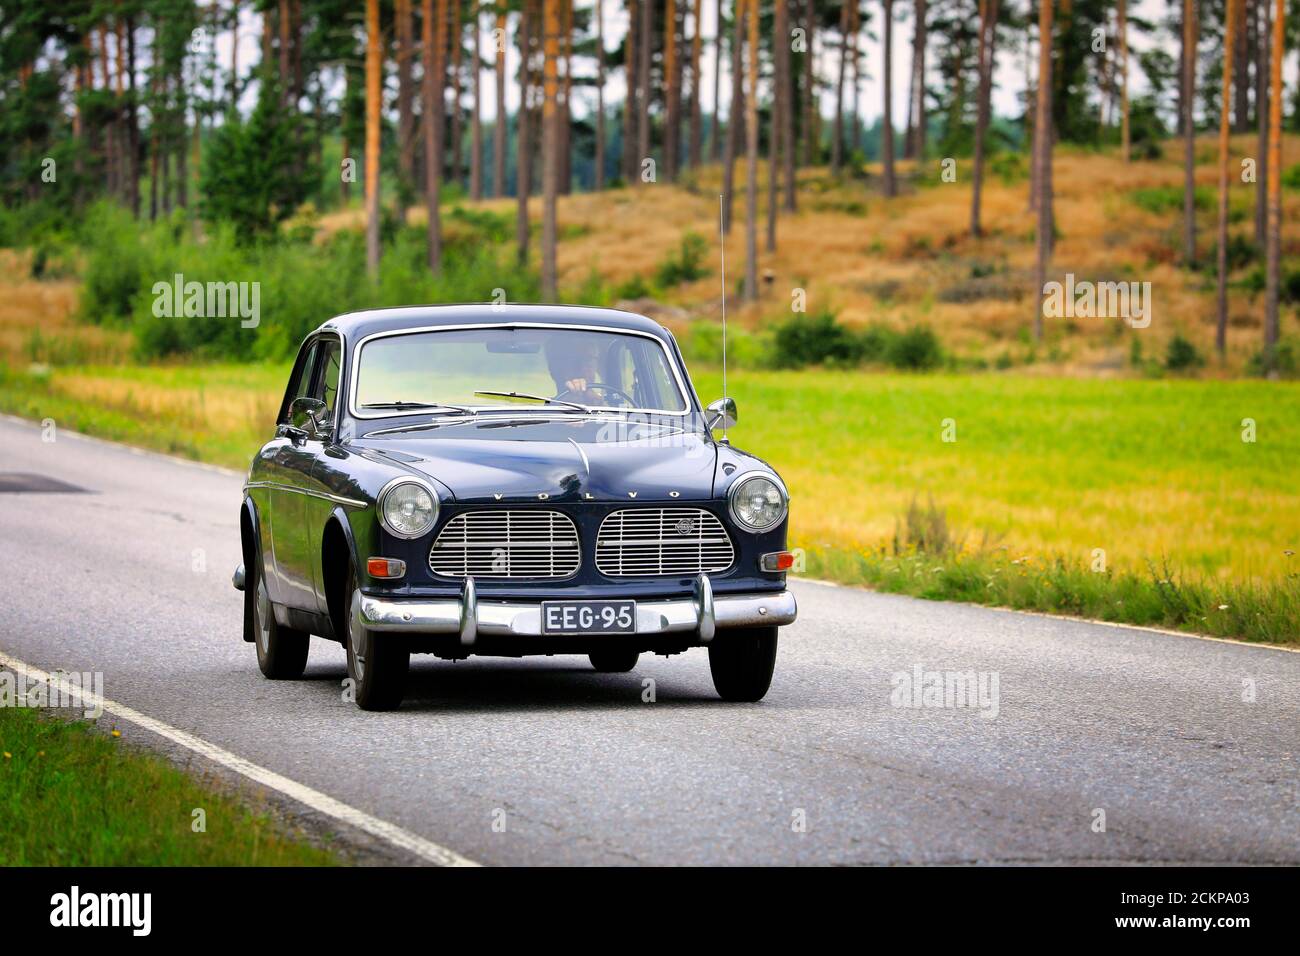 Klassisches schwarzes Volvo Amazon Auto auf Oldtimer Rallye auf Landstraße.  Volvo Amazon wurde 1956–1970 produziert. Salo, Finnland. 15. August 2020  Stockfotografie - Alamy